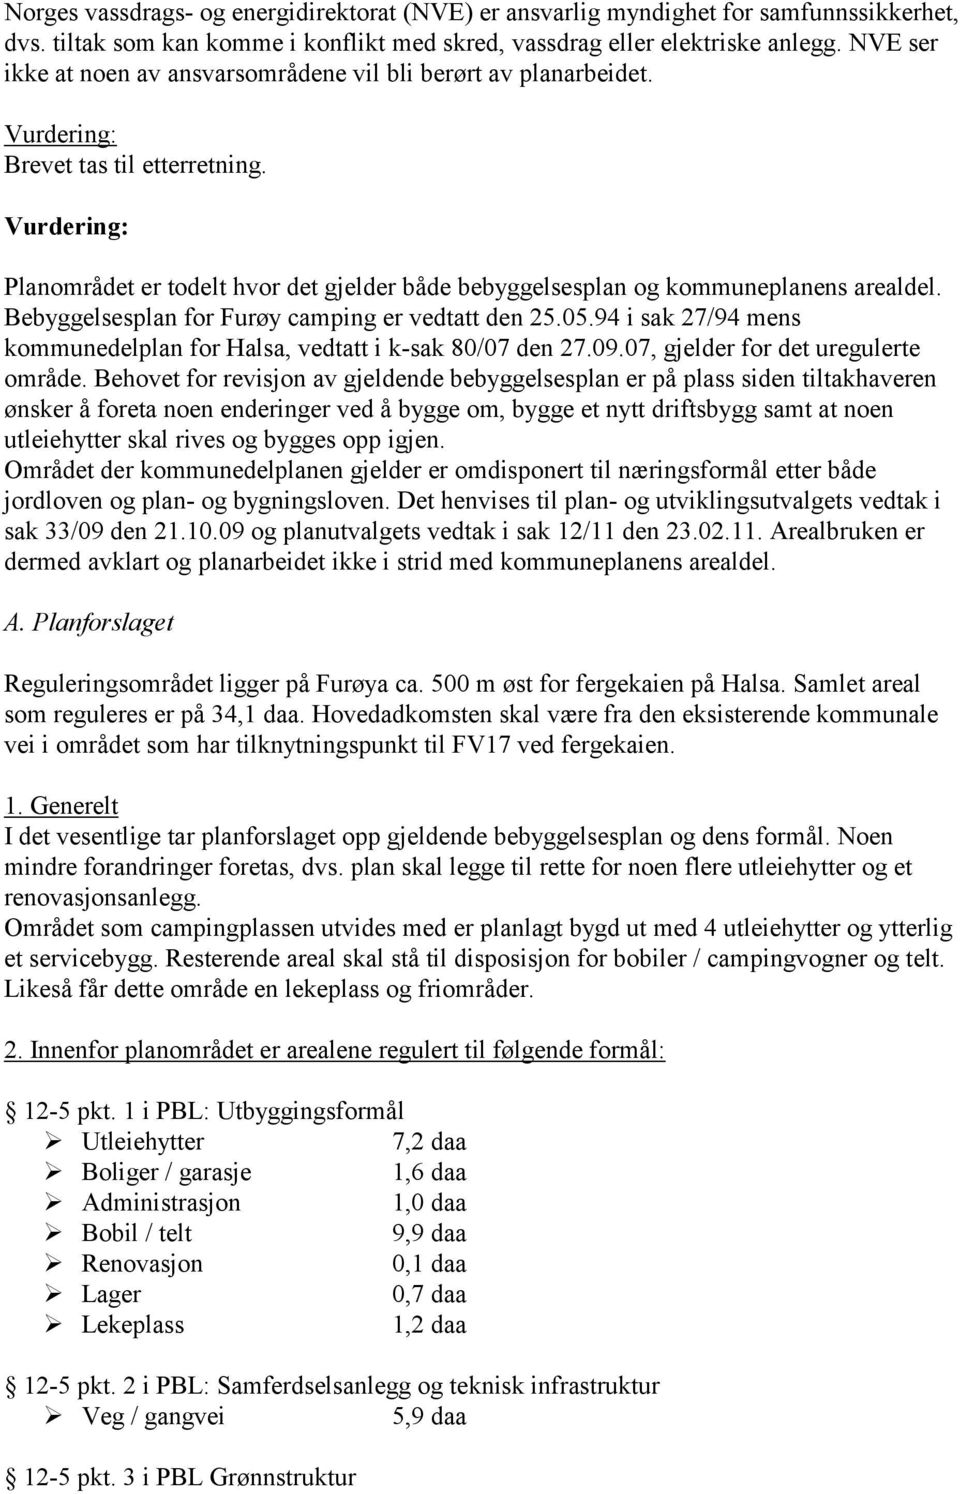 Bebyggelsesplan for Furøy camping er vedtatt den 25.05.94 i sak 27/94 mens kommunedelplan for Halsa, vedtatt i k-sak 80/07 den 27.09.07, gjelder for det uregulerte område.